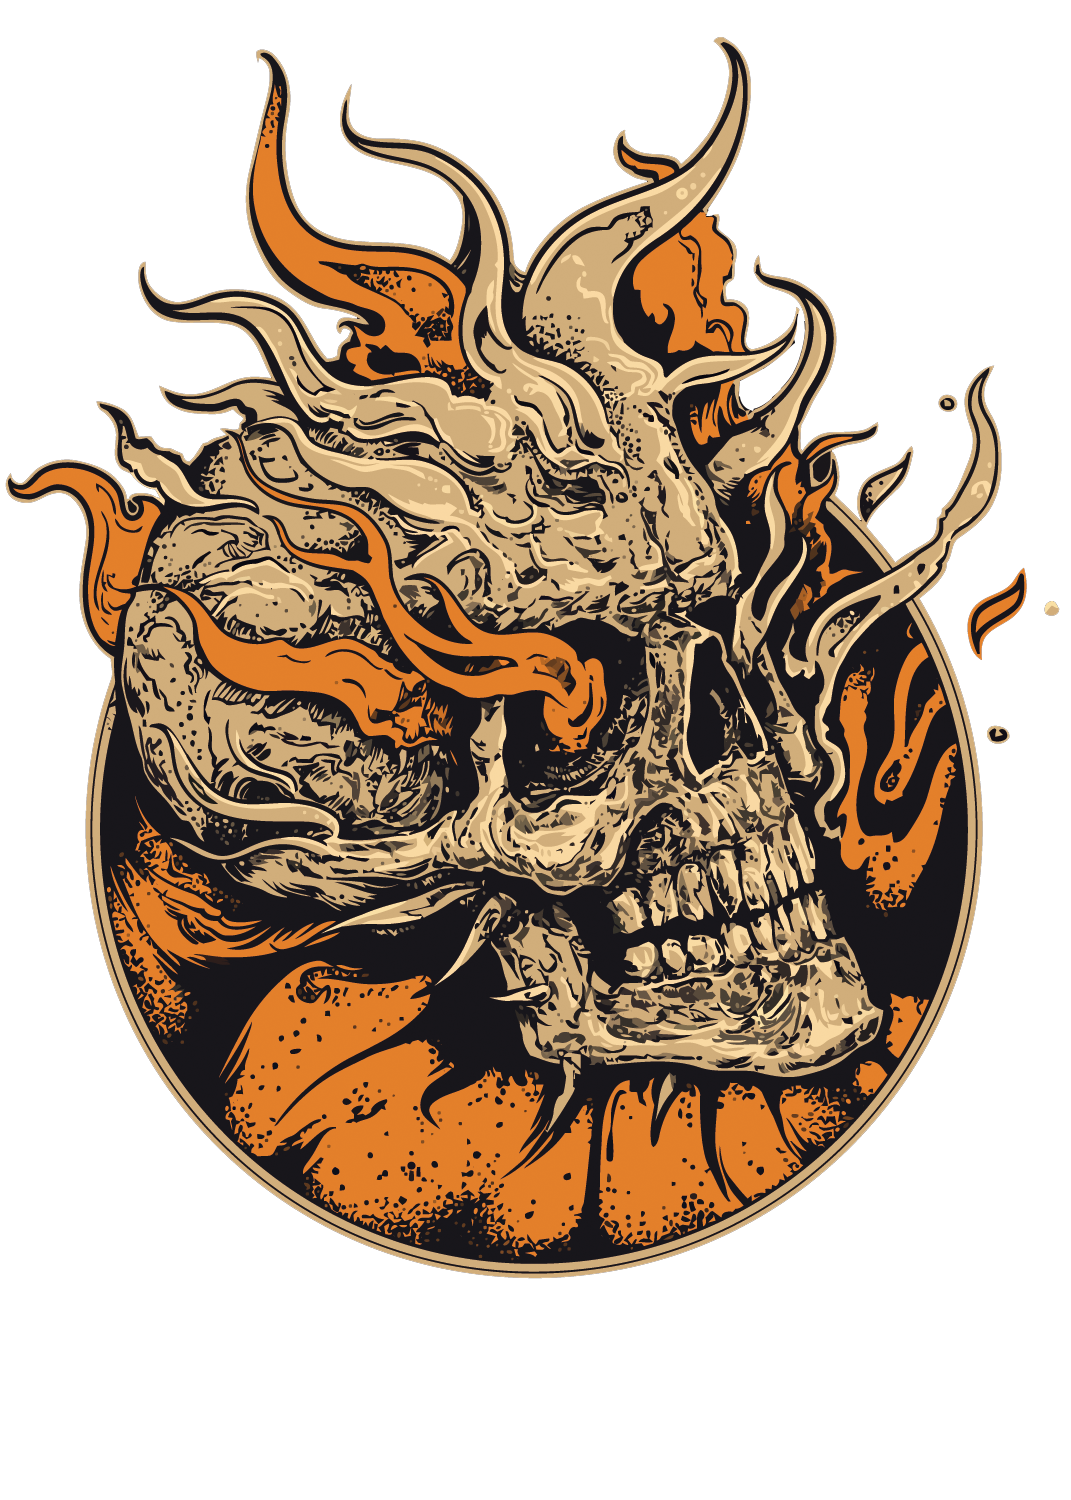 Art Skeleton Skull Illustration Vector Flame Human Clipart